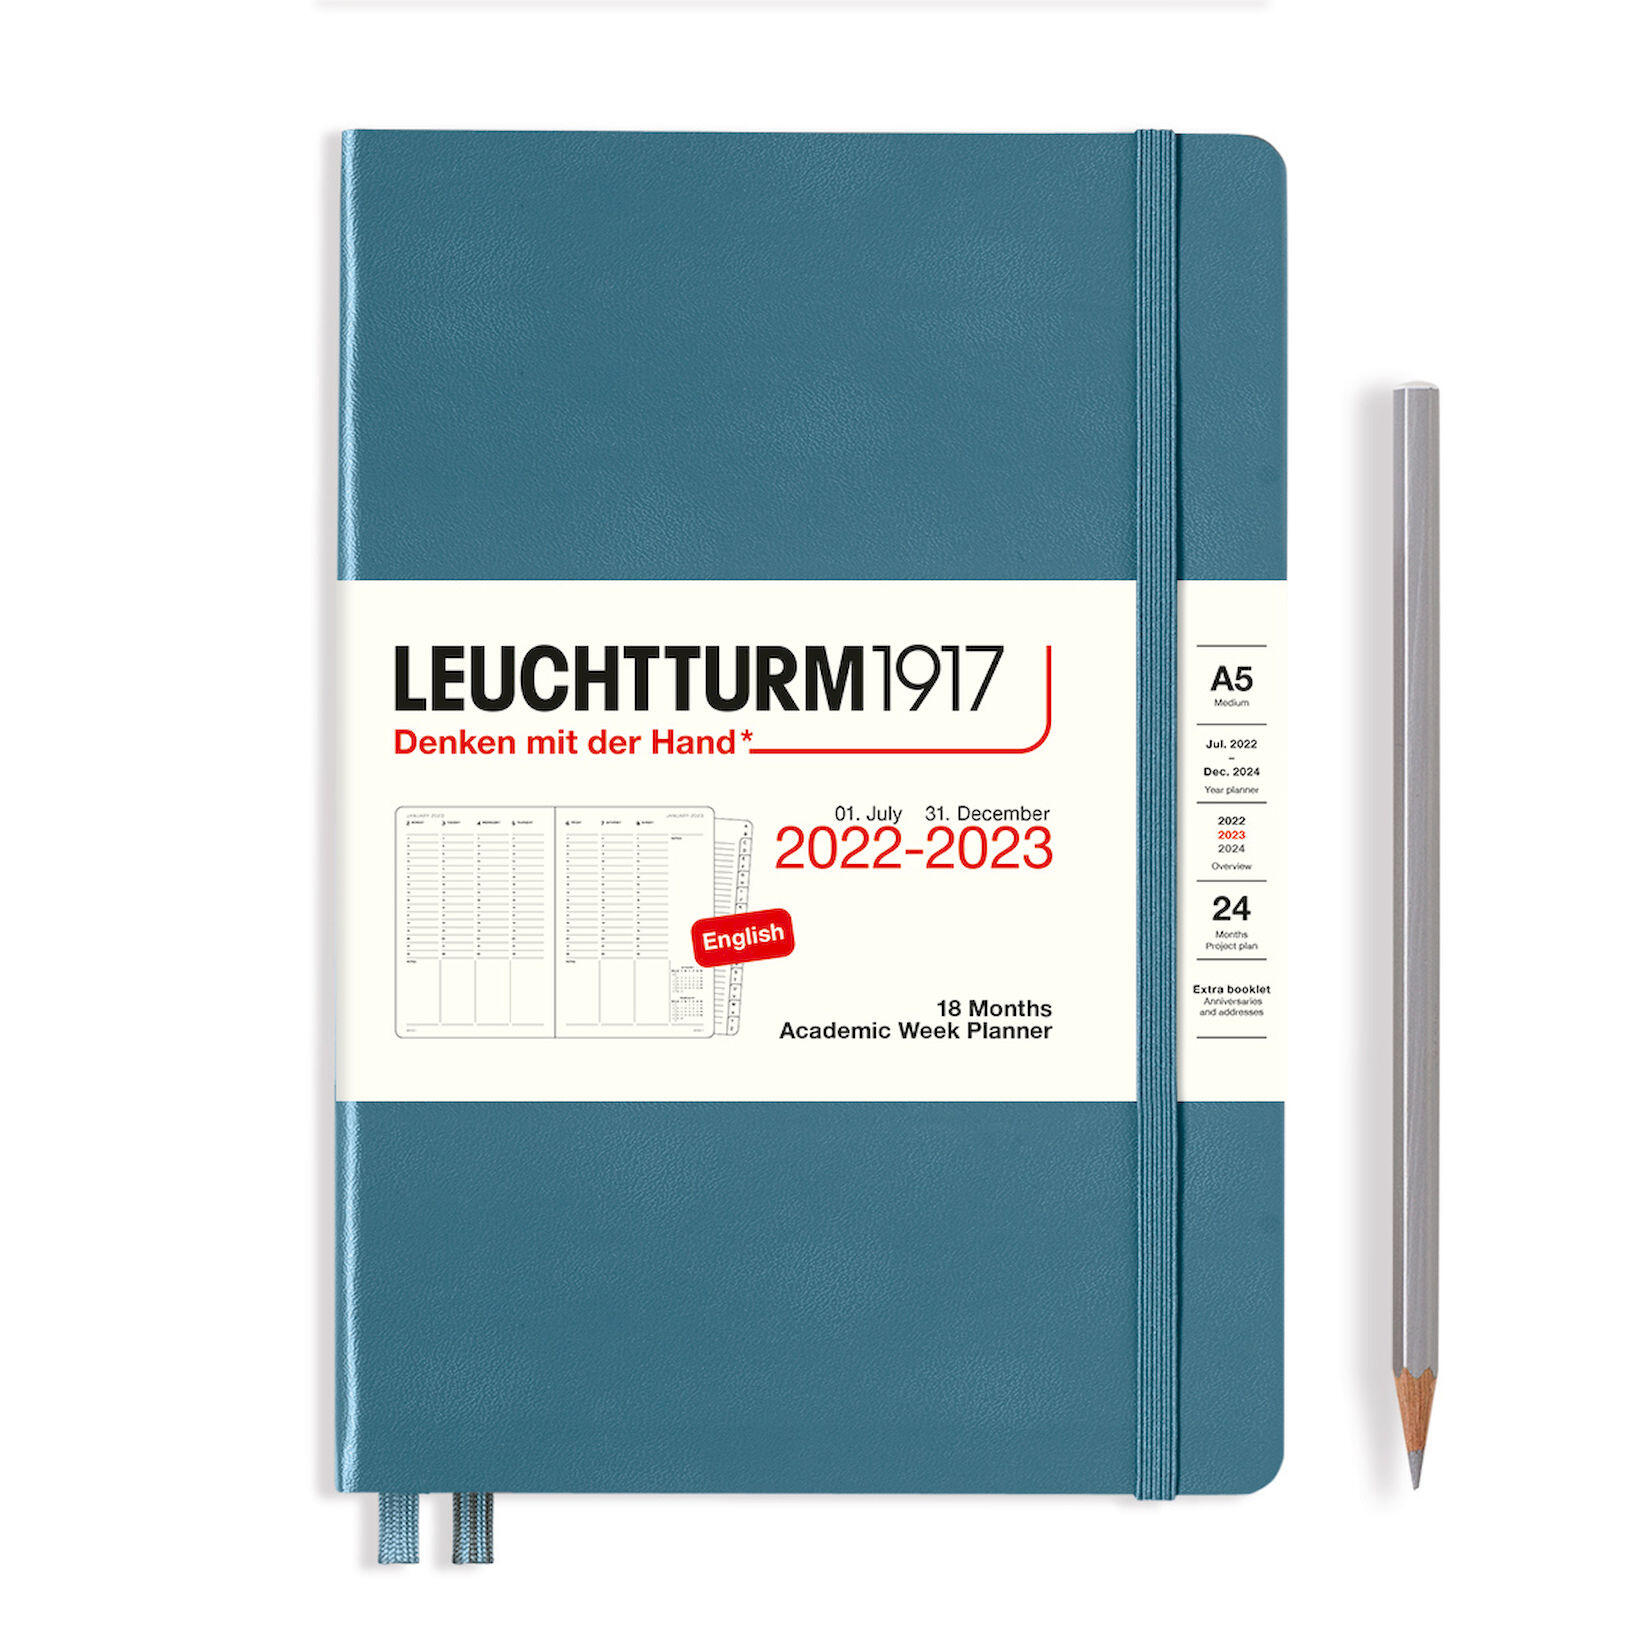 academic-week-planner-medium-a5-18-months-stone-blue-leuchtturm1917-notebooks-bullet